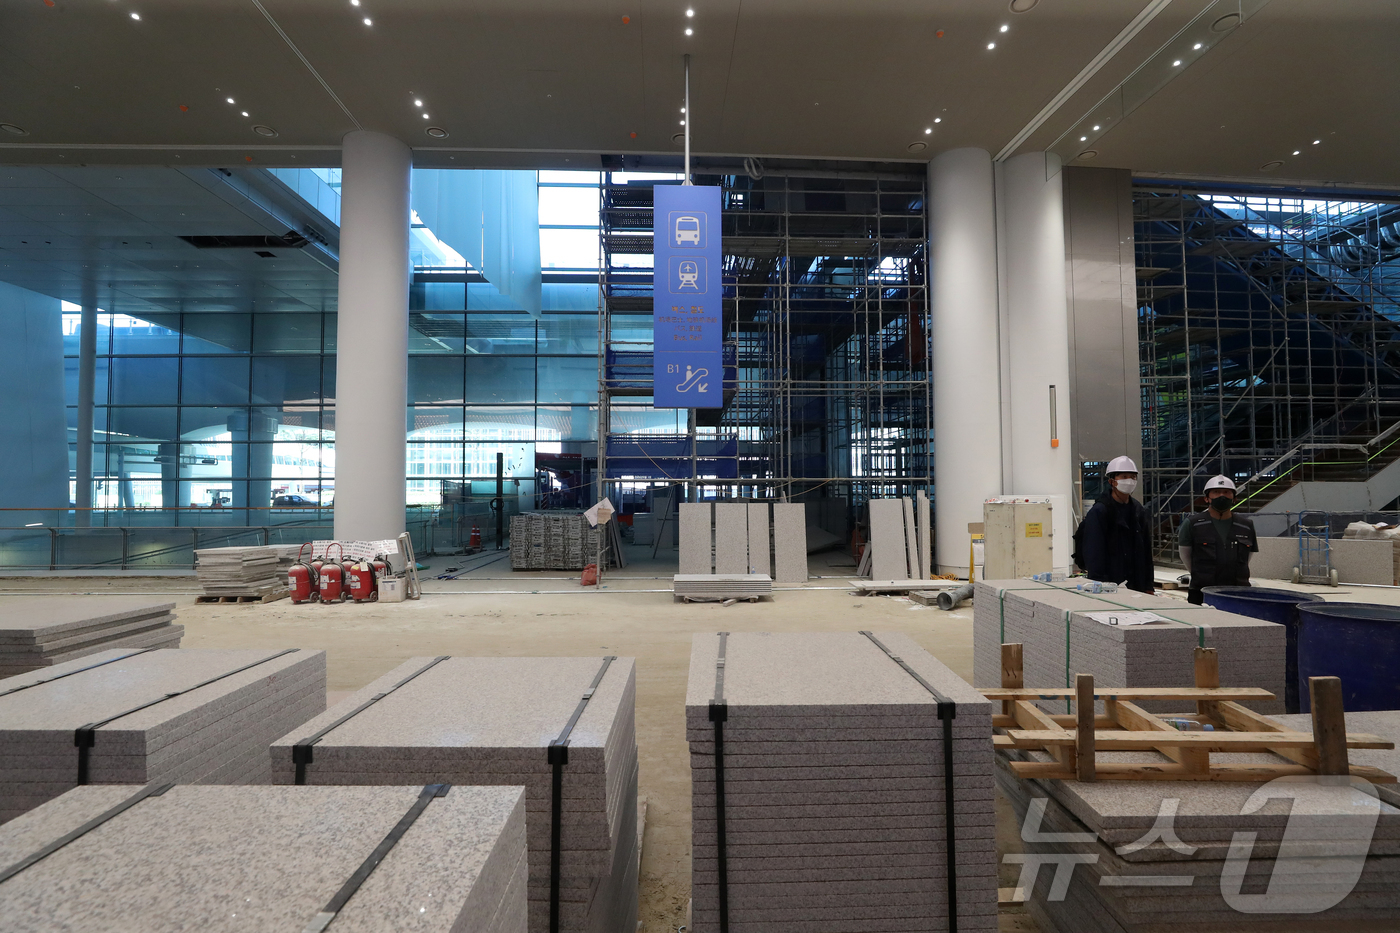 (인천공항=뉴스1) 이승배 기자 = 지난 28일 인천국제공항 2터미널에서 열린 인천공항 4단계 건설현장 언론 공개 행사에서 도착층이 공개되고 있다.제2여객터미널 확장을 주요 골자로 …